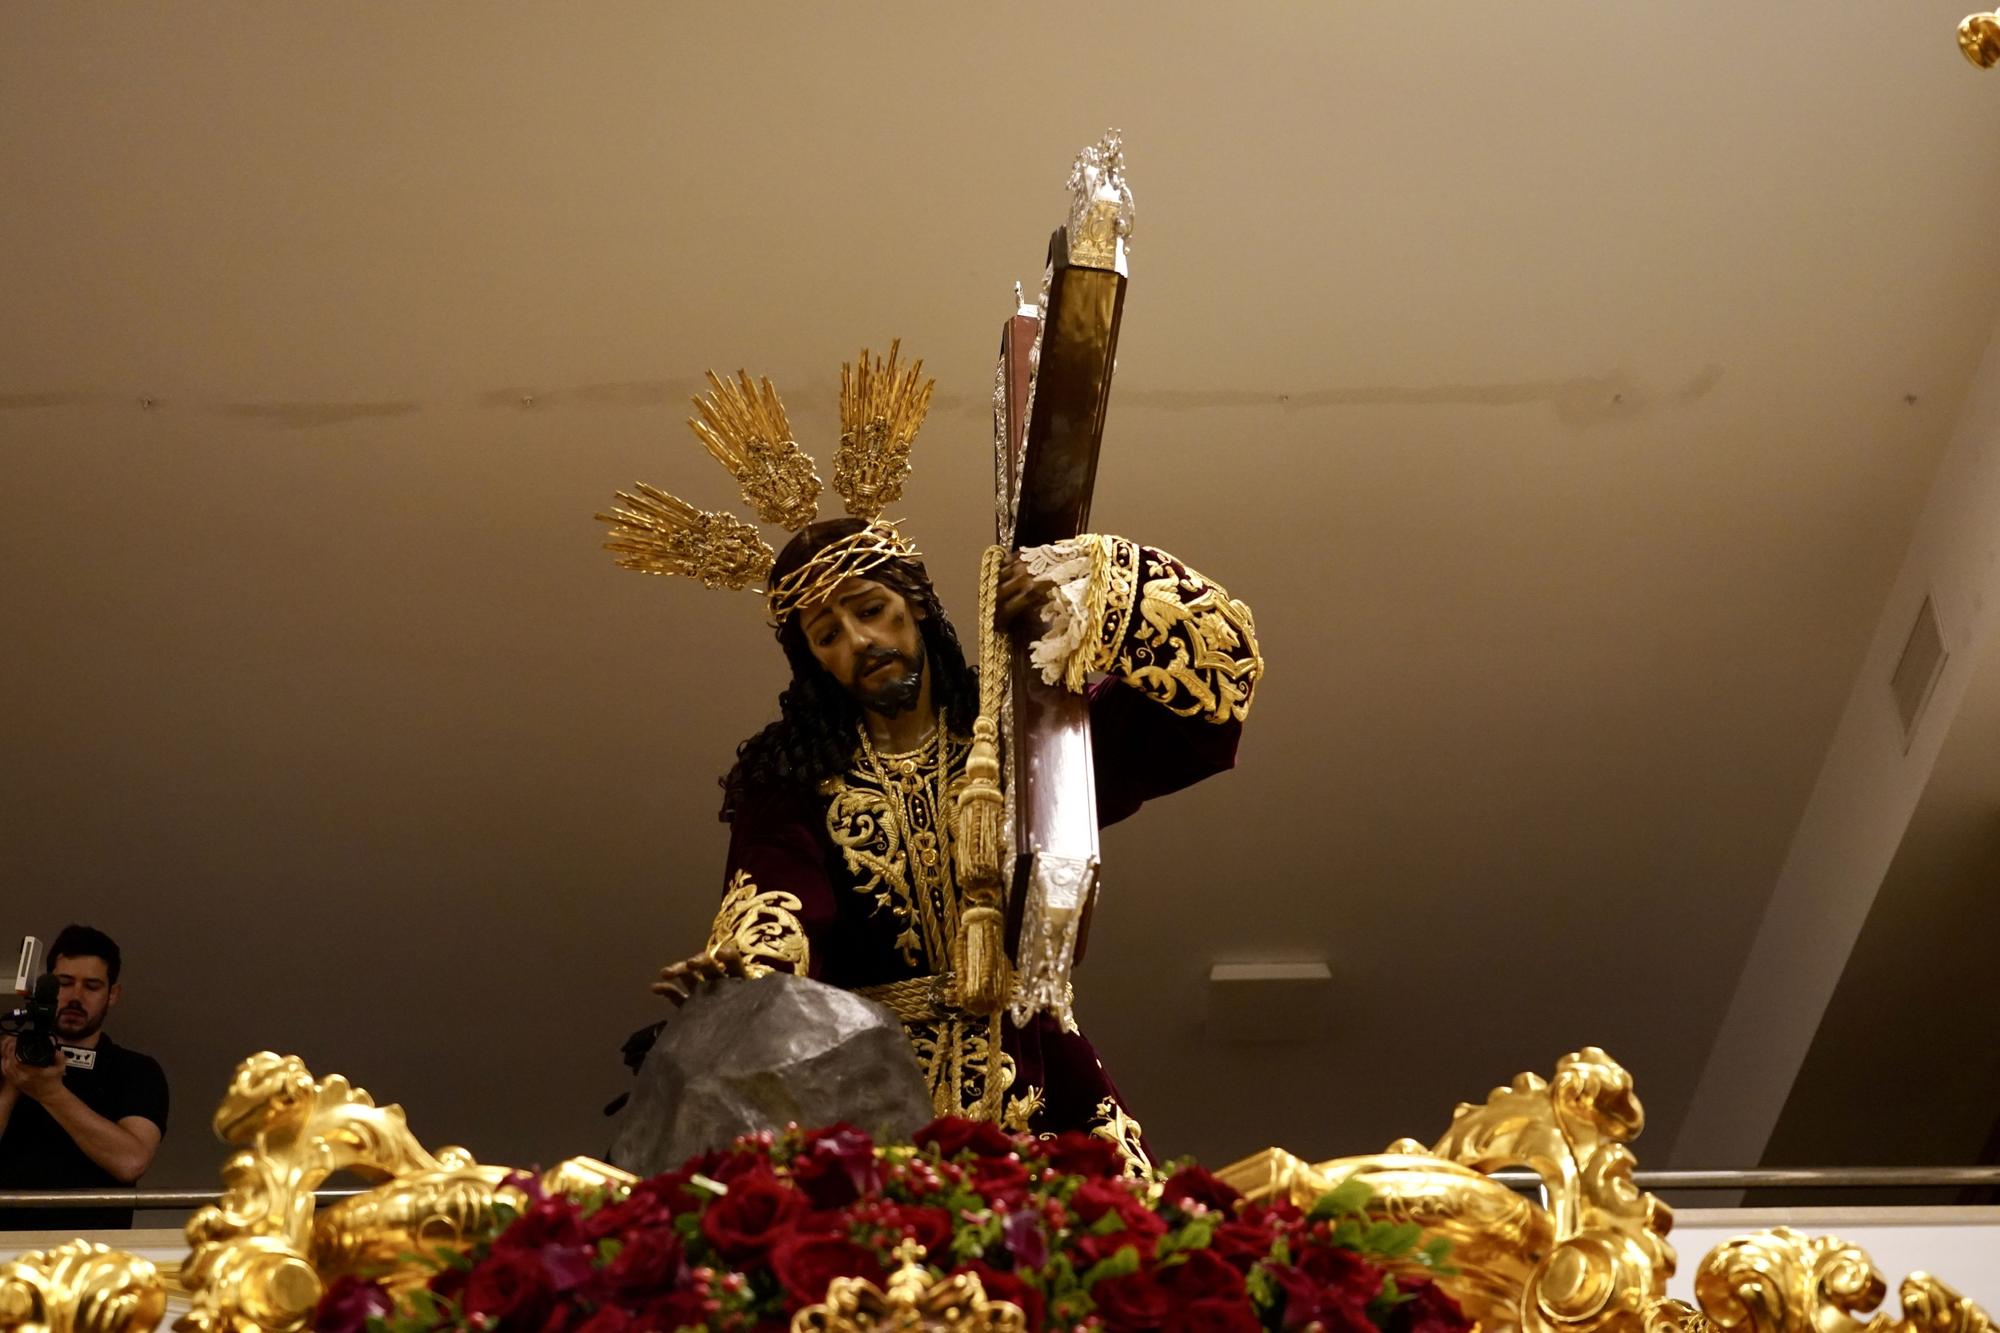 La previsión de lluvia para la noche del Jueves Santo de Málaga llevó a la suspensión de la procesión de la hermandad de la Misericordia.